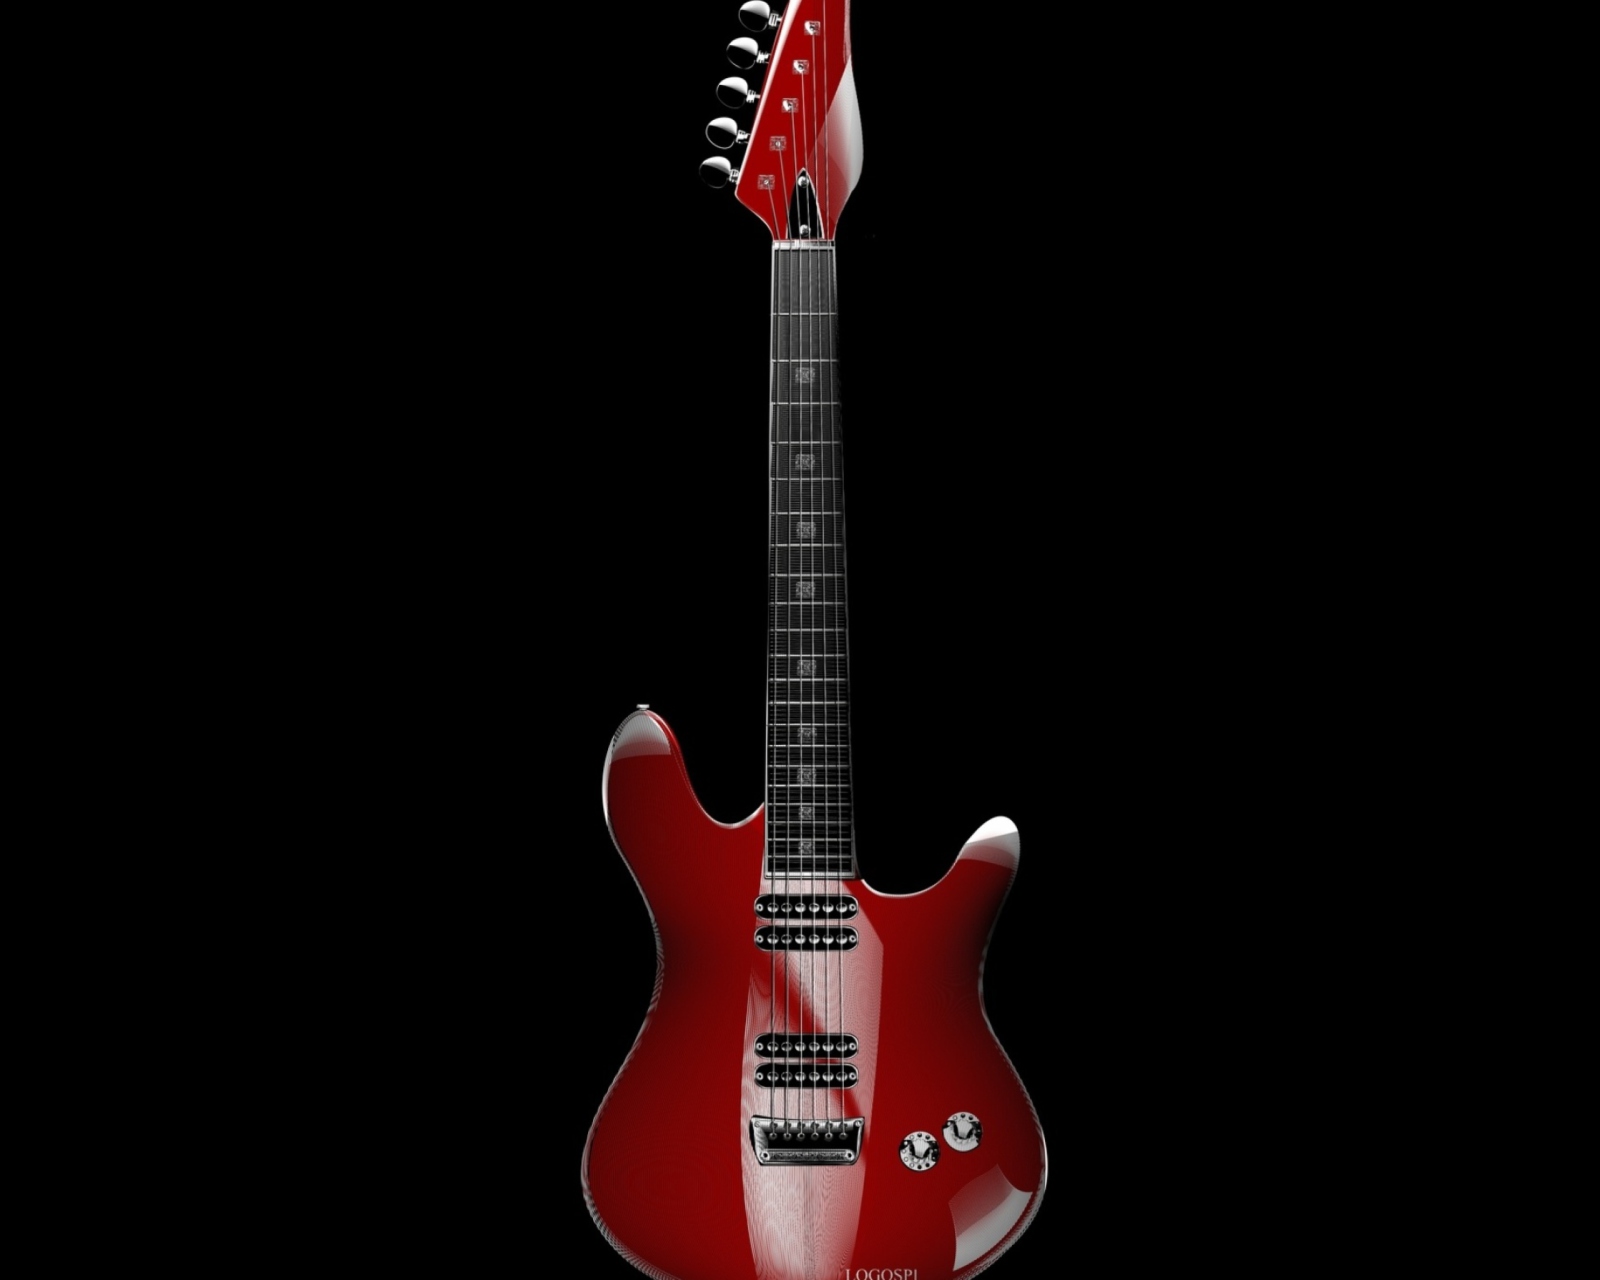 Das Red Guitar Wallpaper 1600x1280